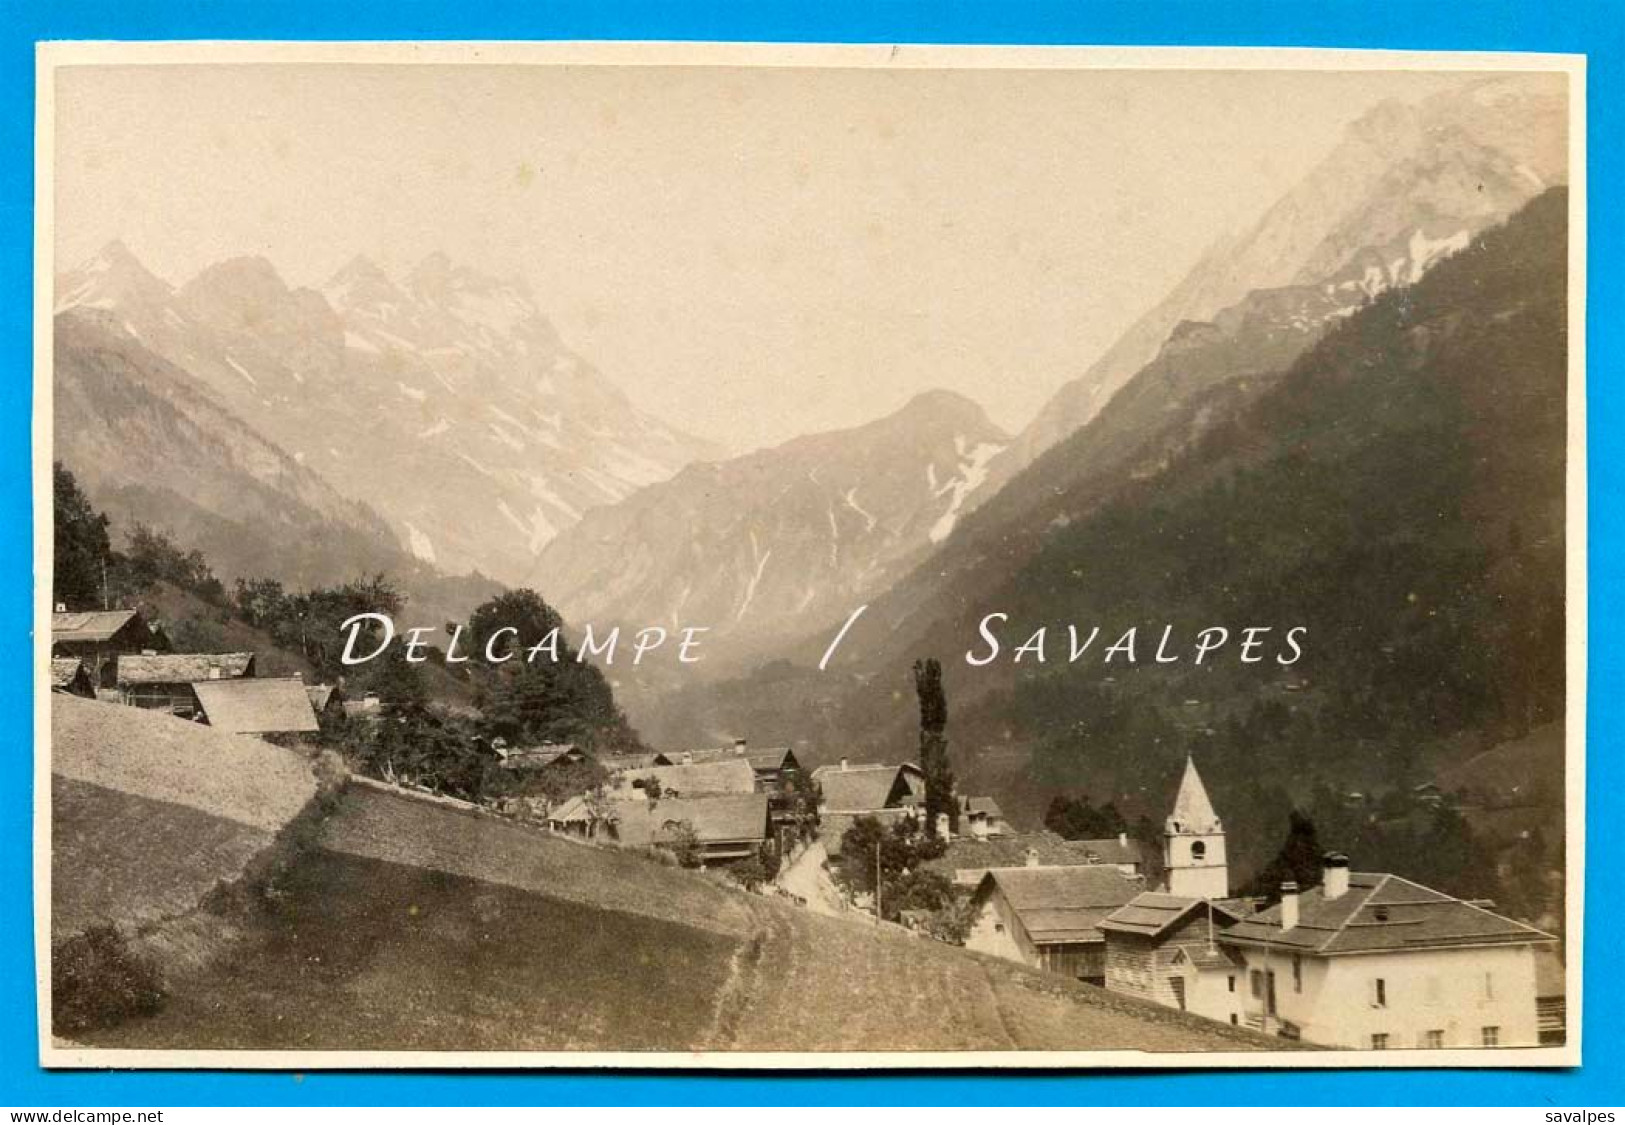 Suisse Canton De Vaud Aigle * Gryon Et Les Diablerets * Photo Albumine Vers 1880 - Alte (vor 1900)